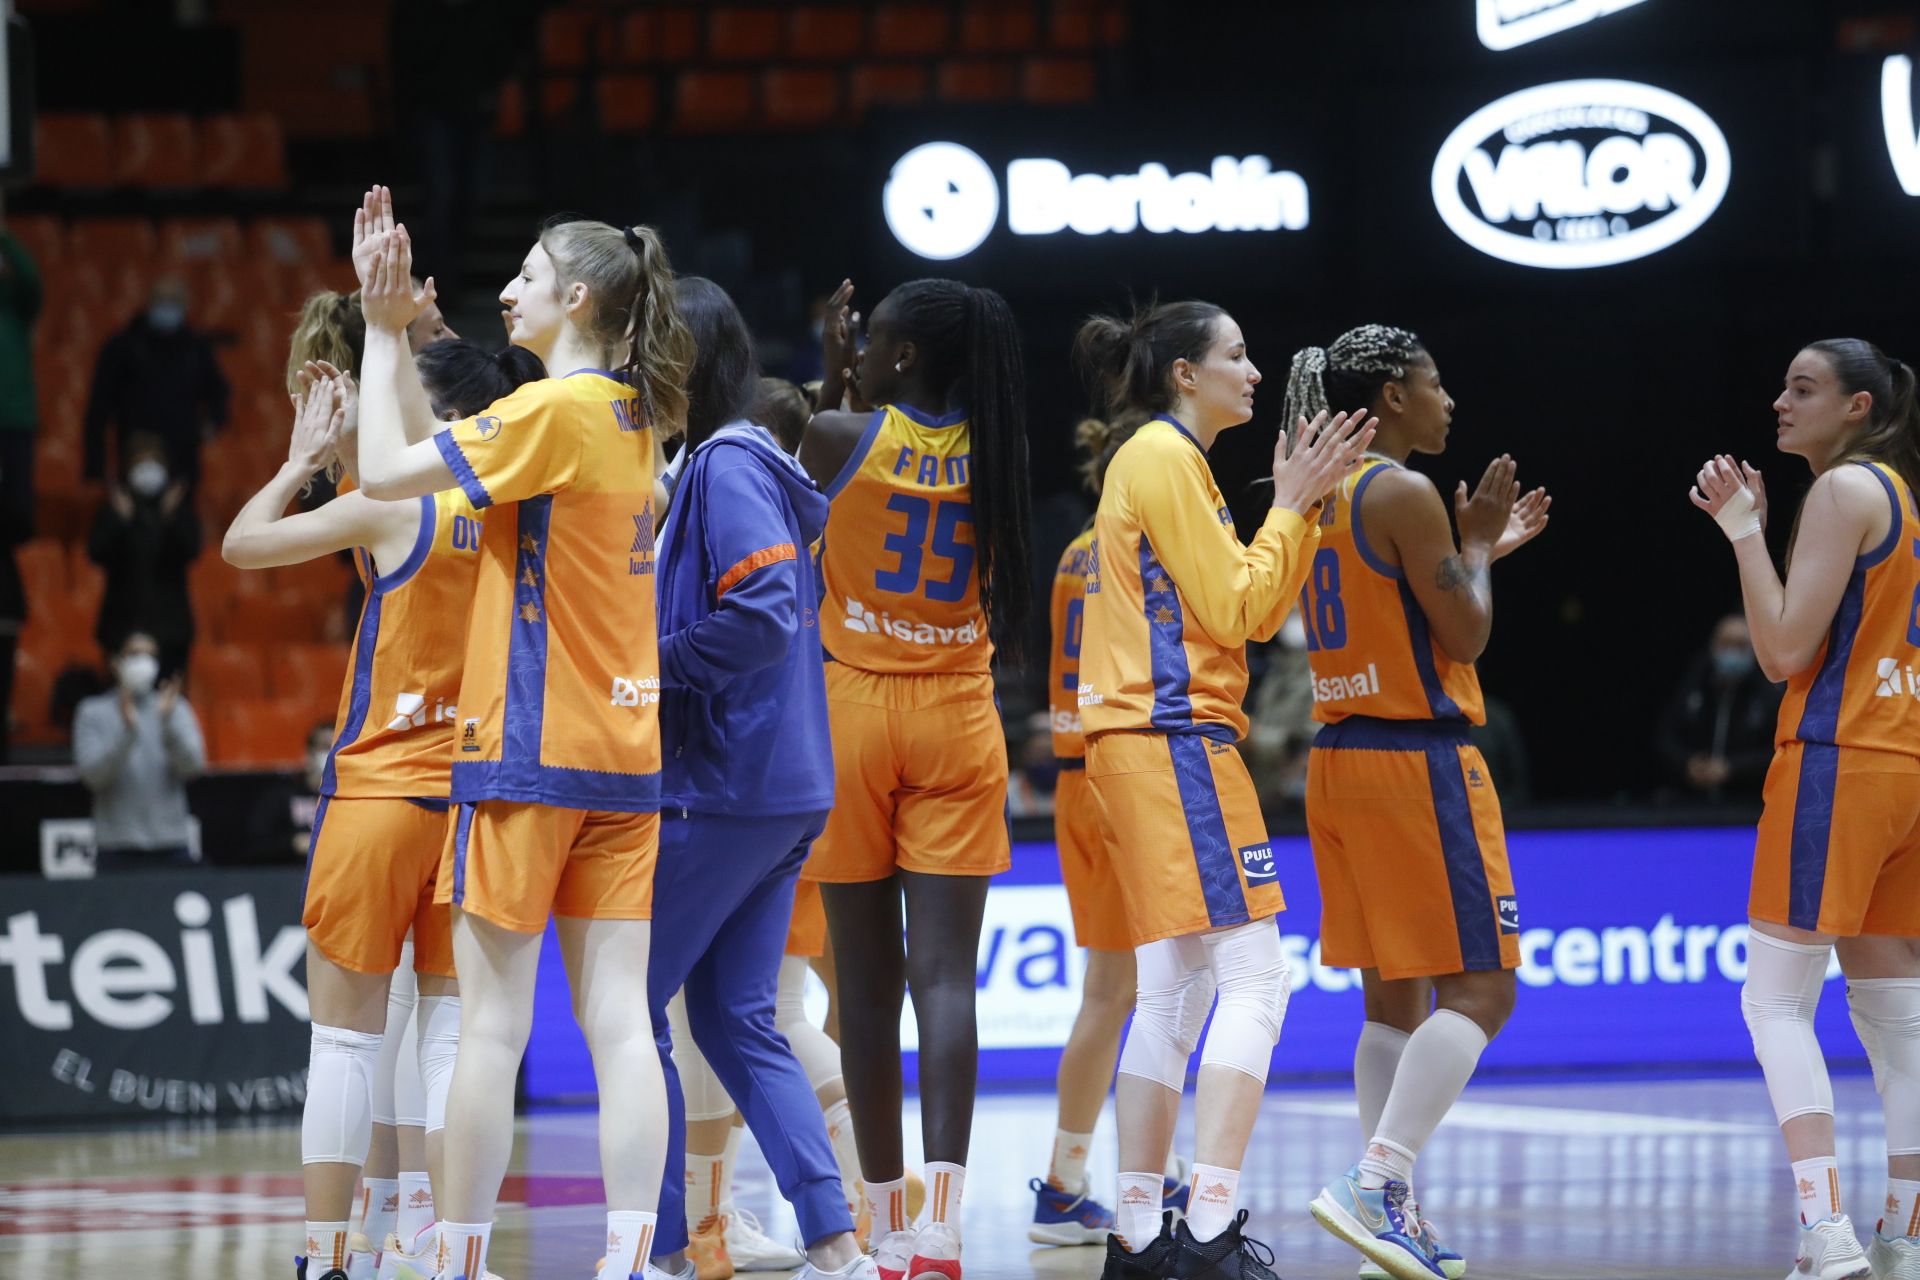 El Valencia Basket elimina al Ormanspor: Las mejores fotos